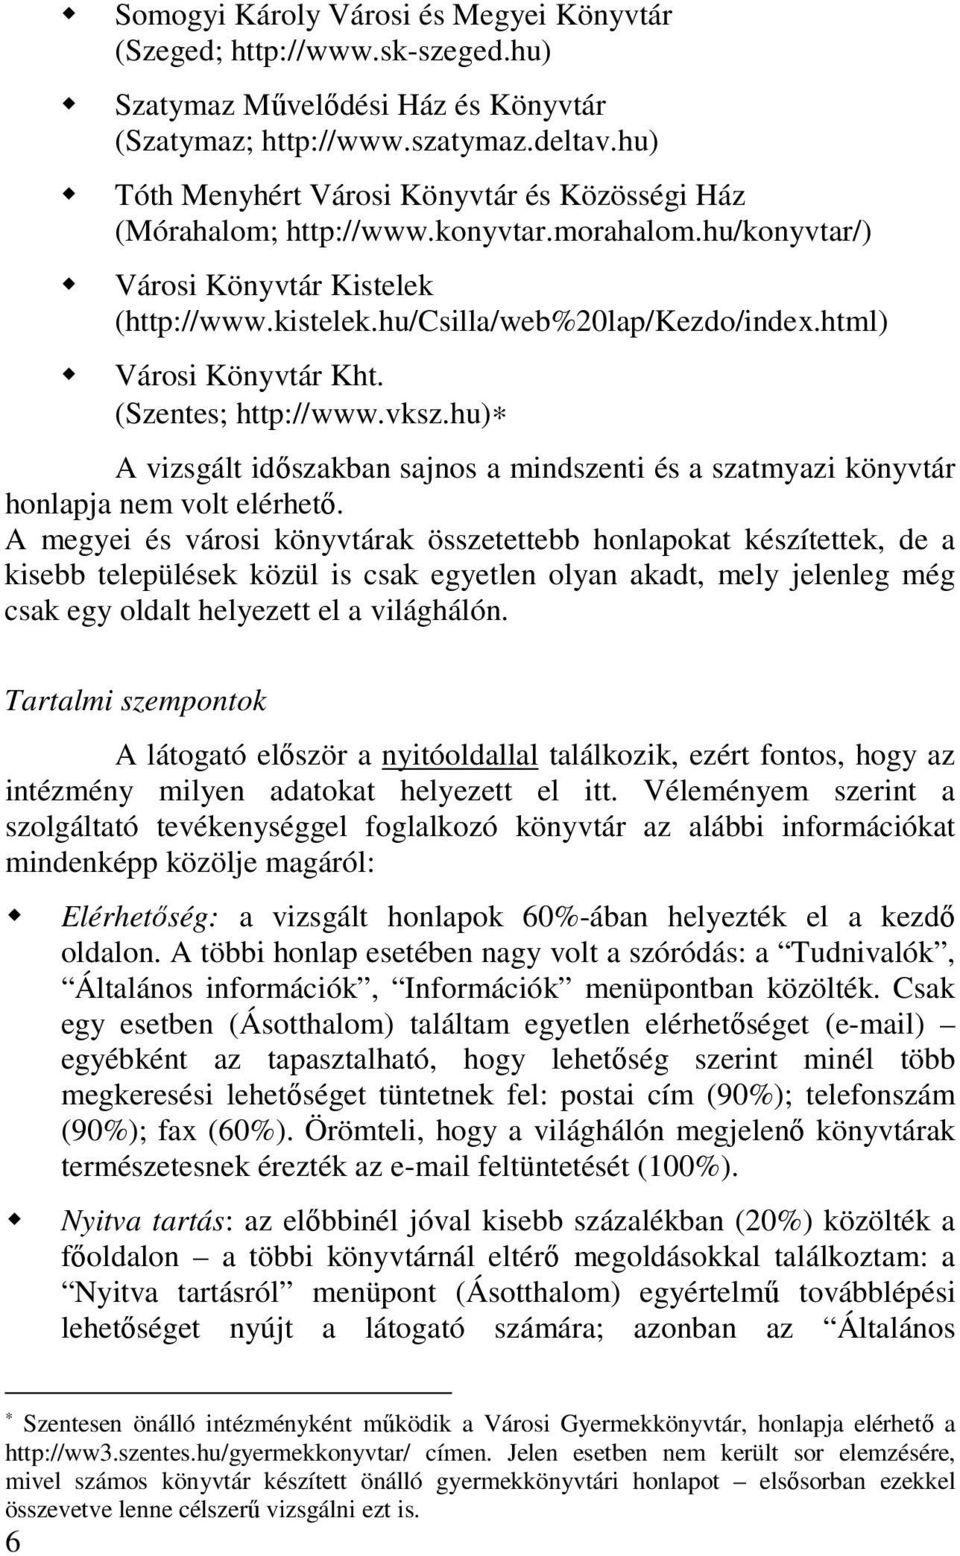 html) Városi Könyvtár Kht. (Szentes; http://www.vksz.hu) A vizsgált idıszakban sajnos a mindszenti és a szatmyazi könyvtár honlapja nem volt elérhetı.